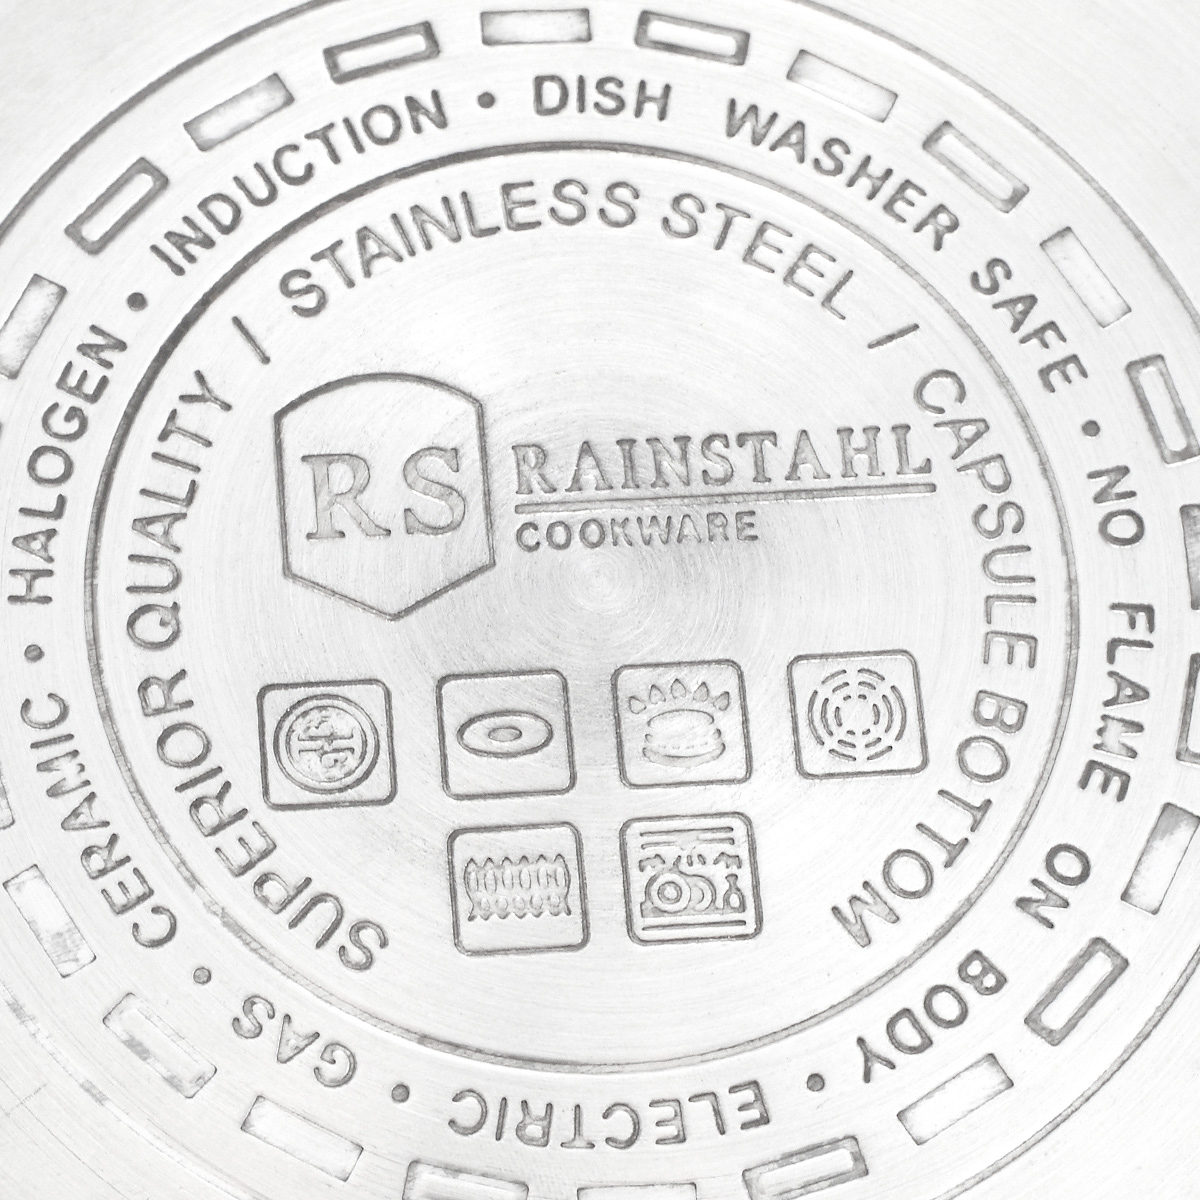 фото Набор посуды Rainstahl, 1647-06RS\CW, стальной, 6 предметов